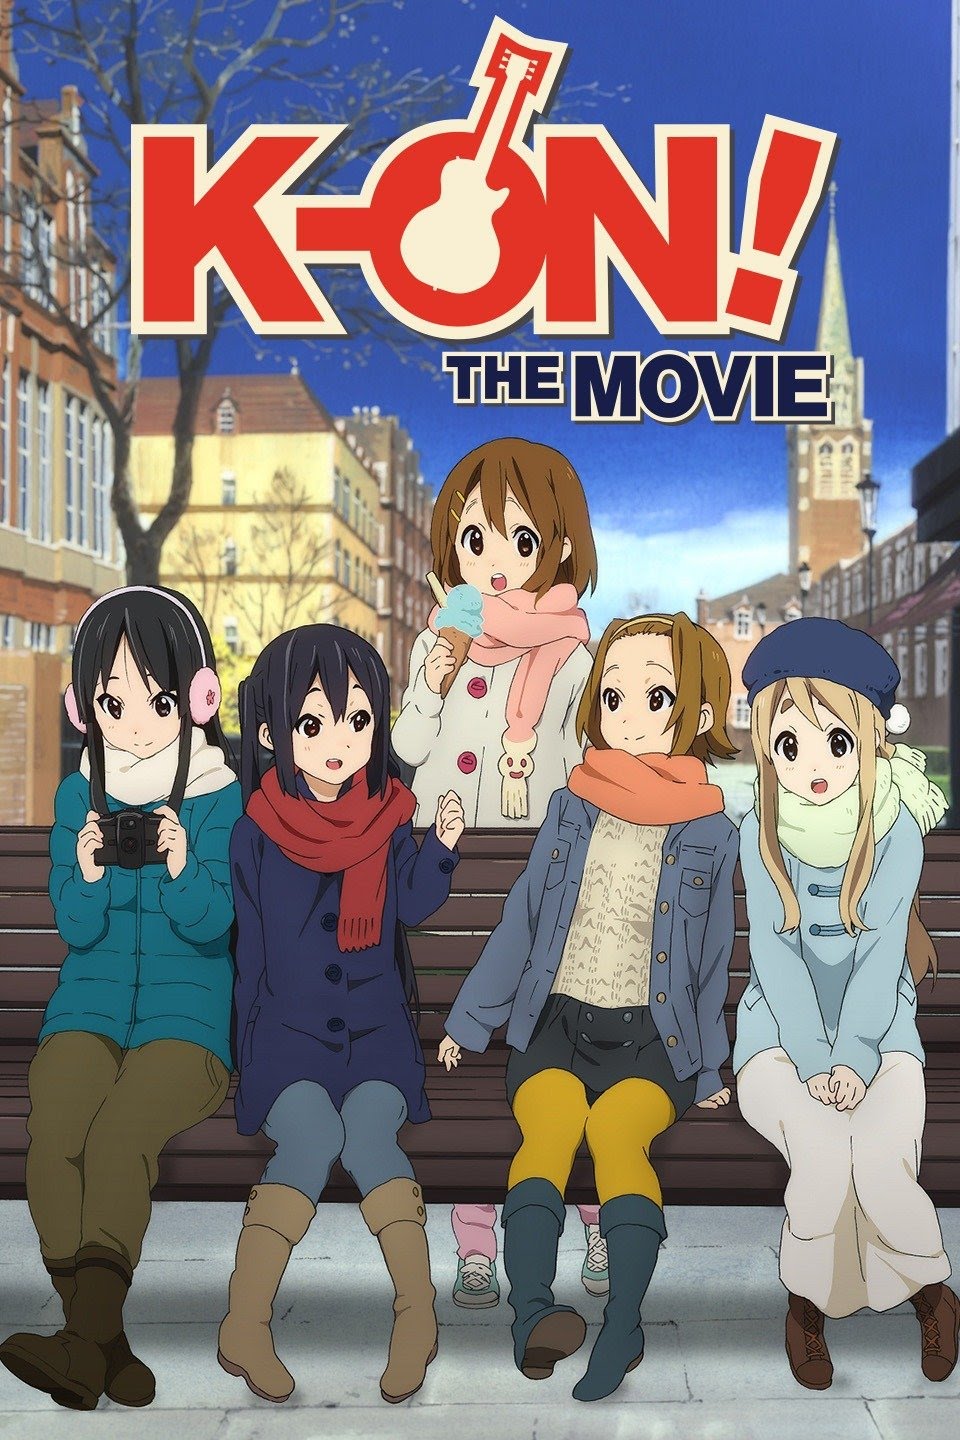 The Visual Medium KON Movie Anime Review